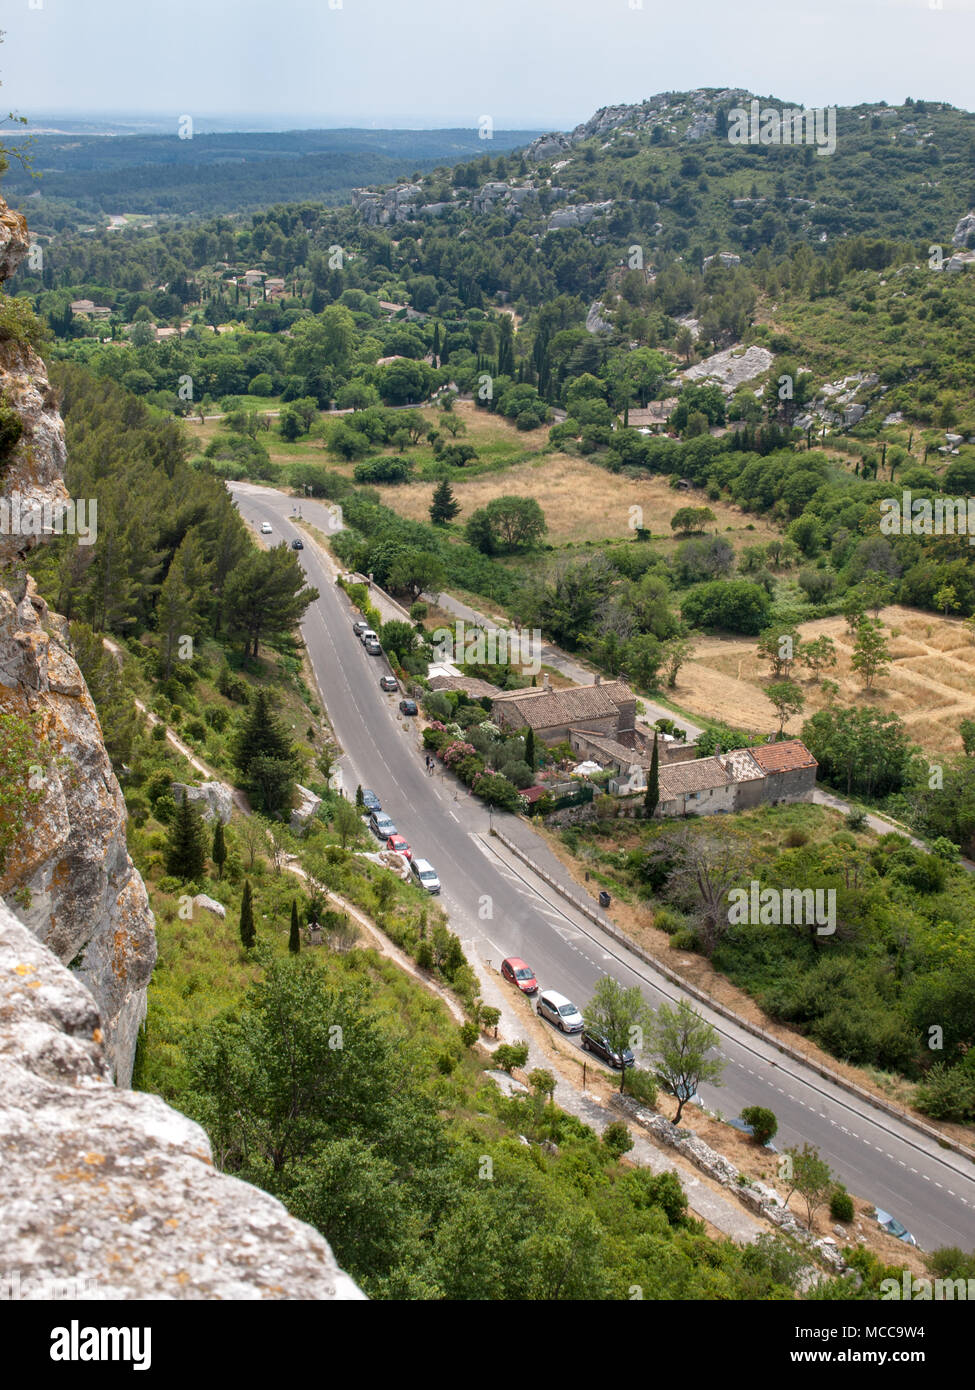 Val d'Efner, Les Baux de Provence, Bouches-du-Rhone, Provenza, Francia Foto Stock